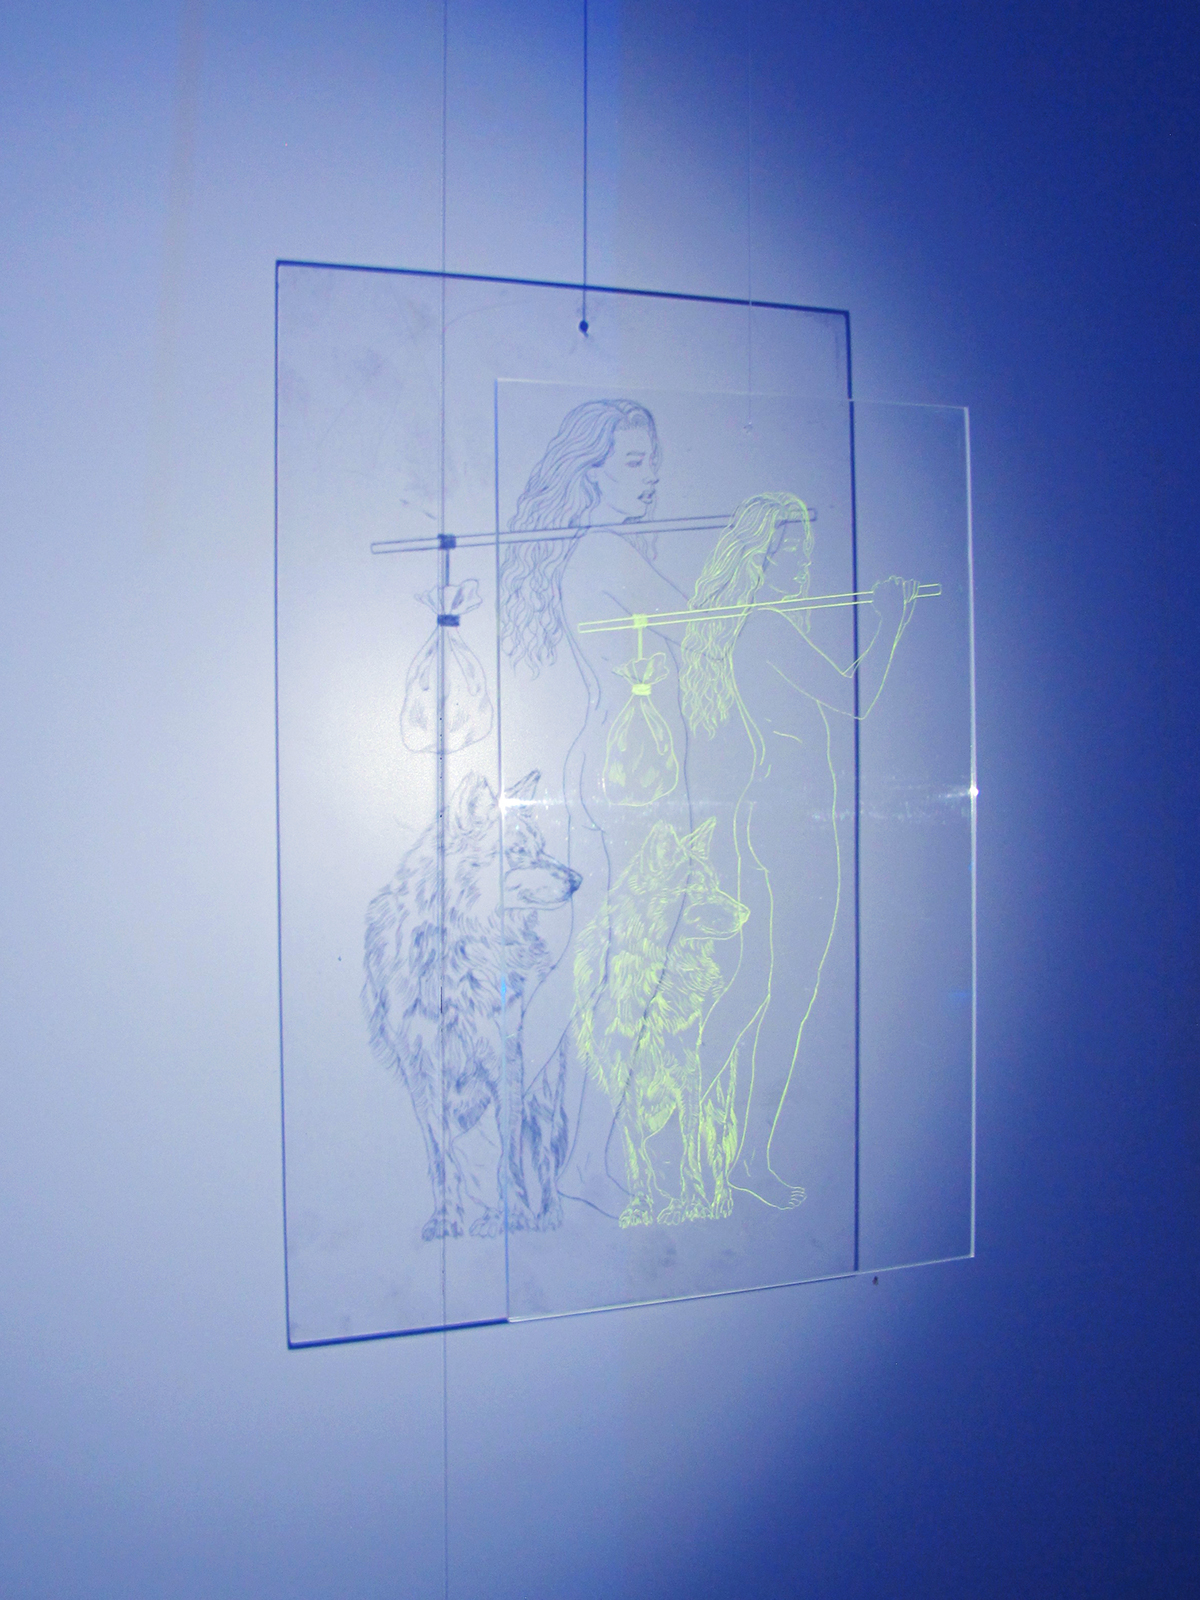 arcans tarot Tarot Cards plexiglass contemporary art installation projection blue light art show printmaking